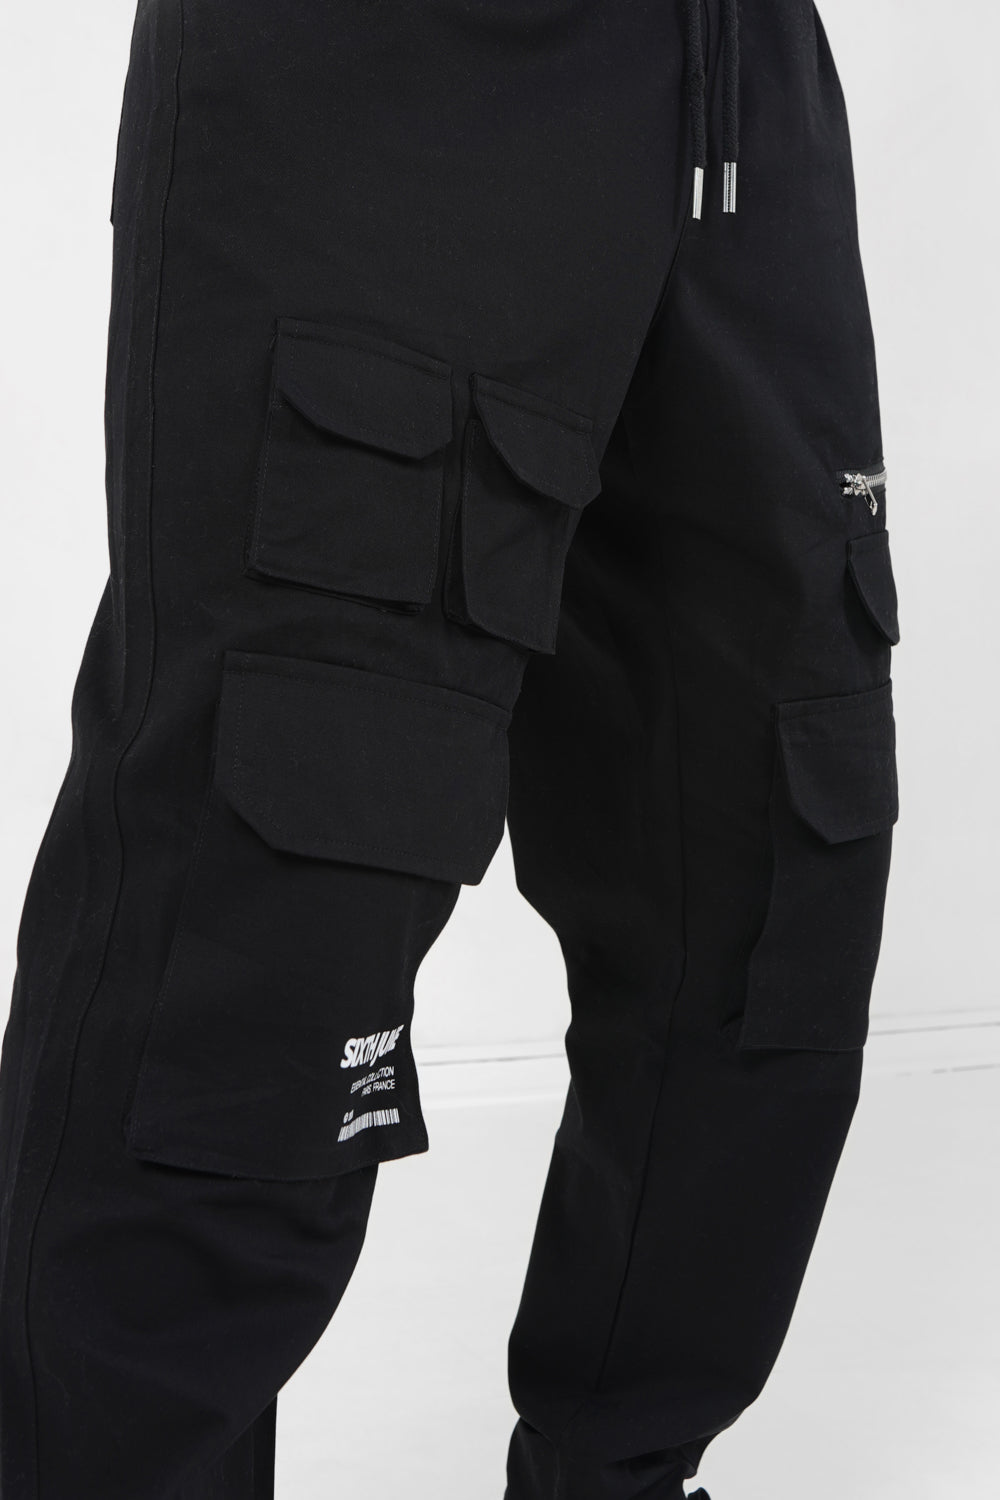 Sixth June - Pantalon poches cargo code barres Noir